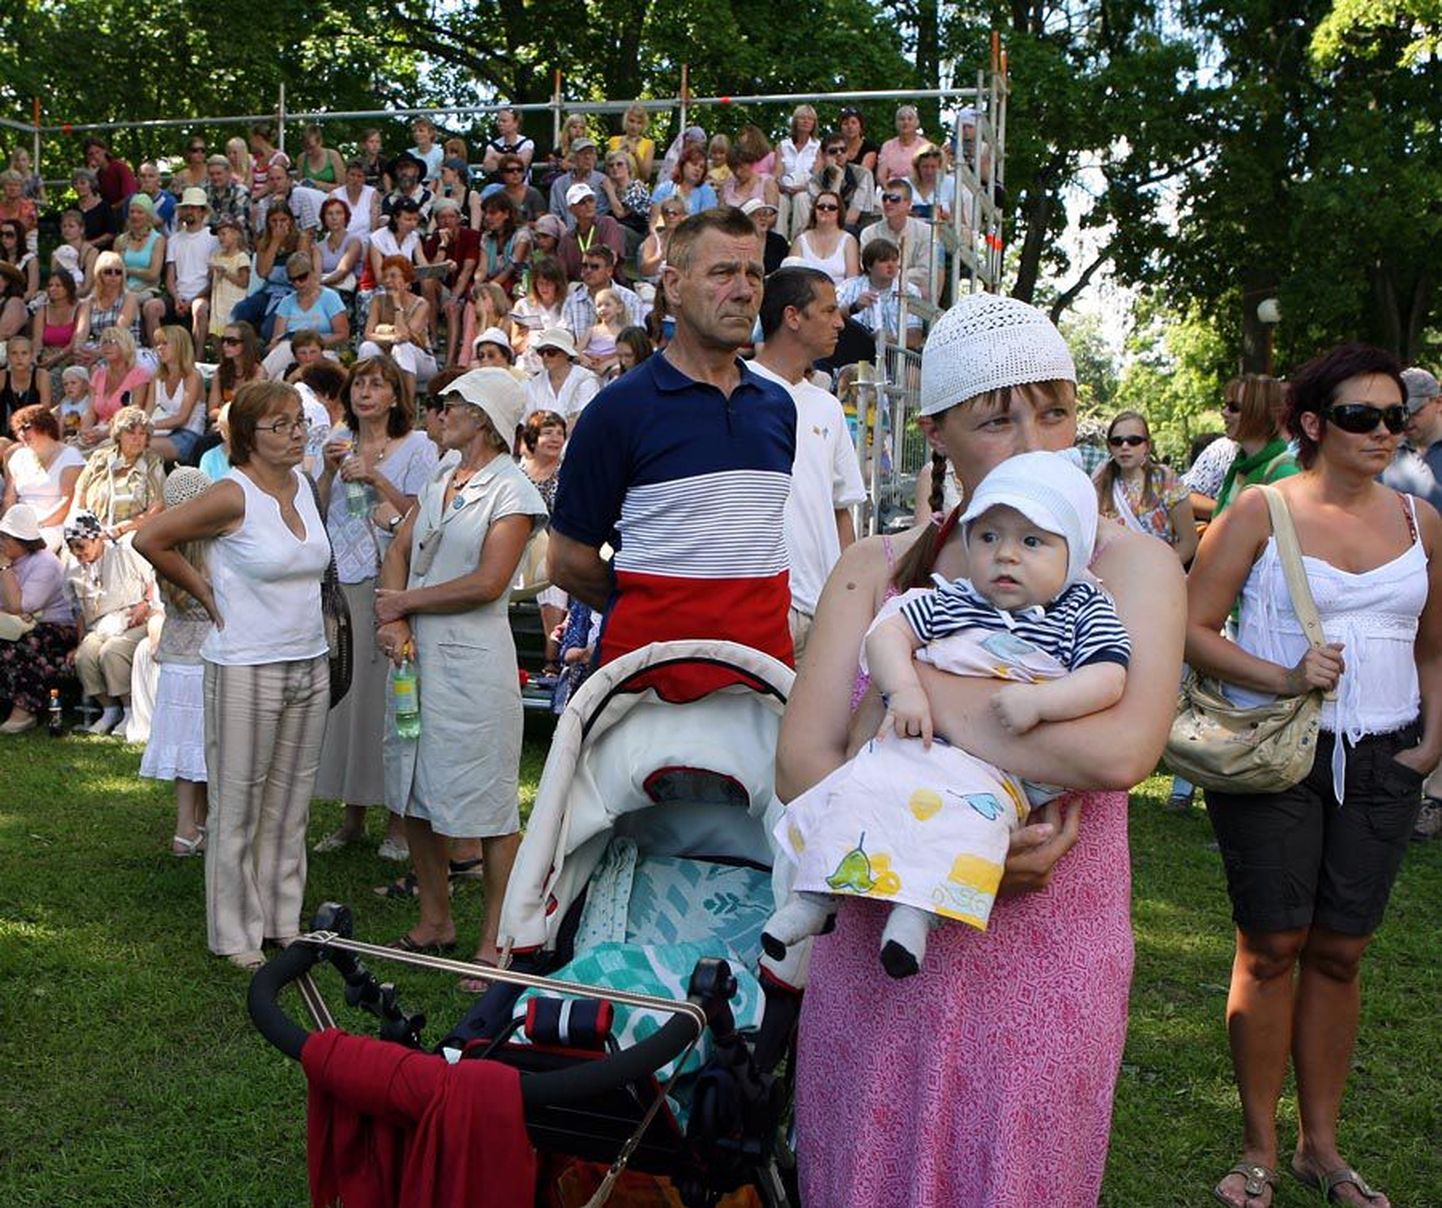 Eesti inimesed oma pärimuskultuuri kuigi hästi ei tunne. Kõige kindlam on pärimuskultuuriga tutvuda juba maast madalast.